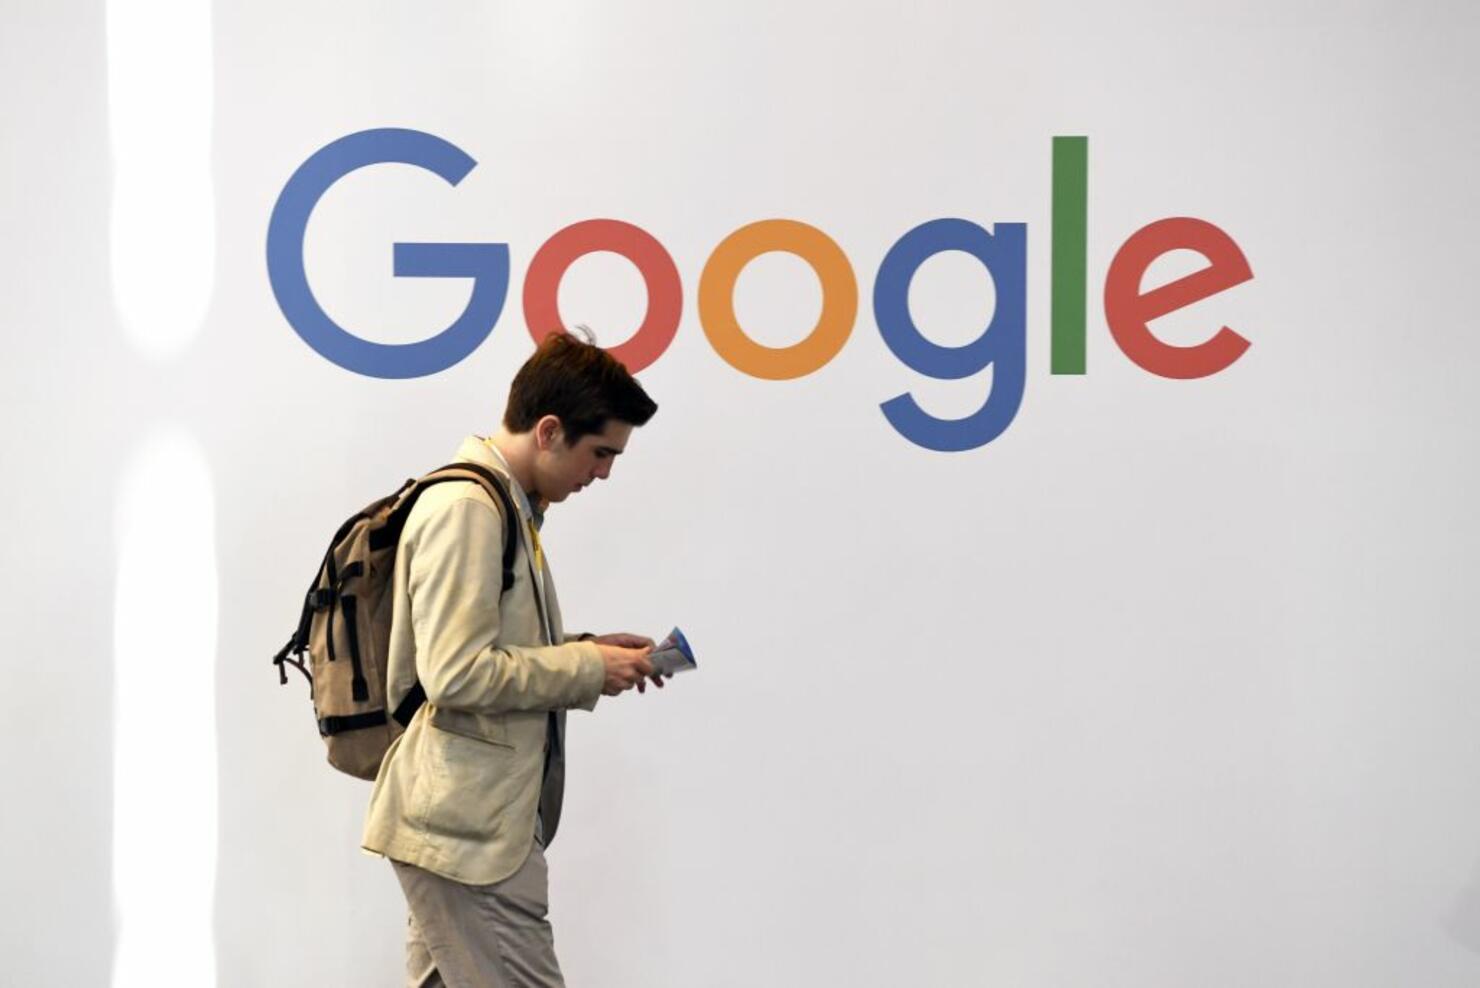 Google+ scheduled to be shut down